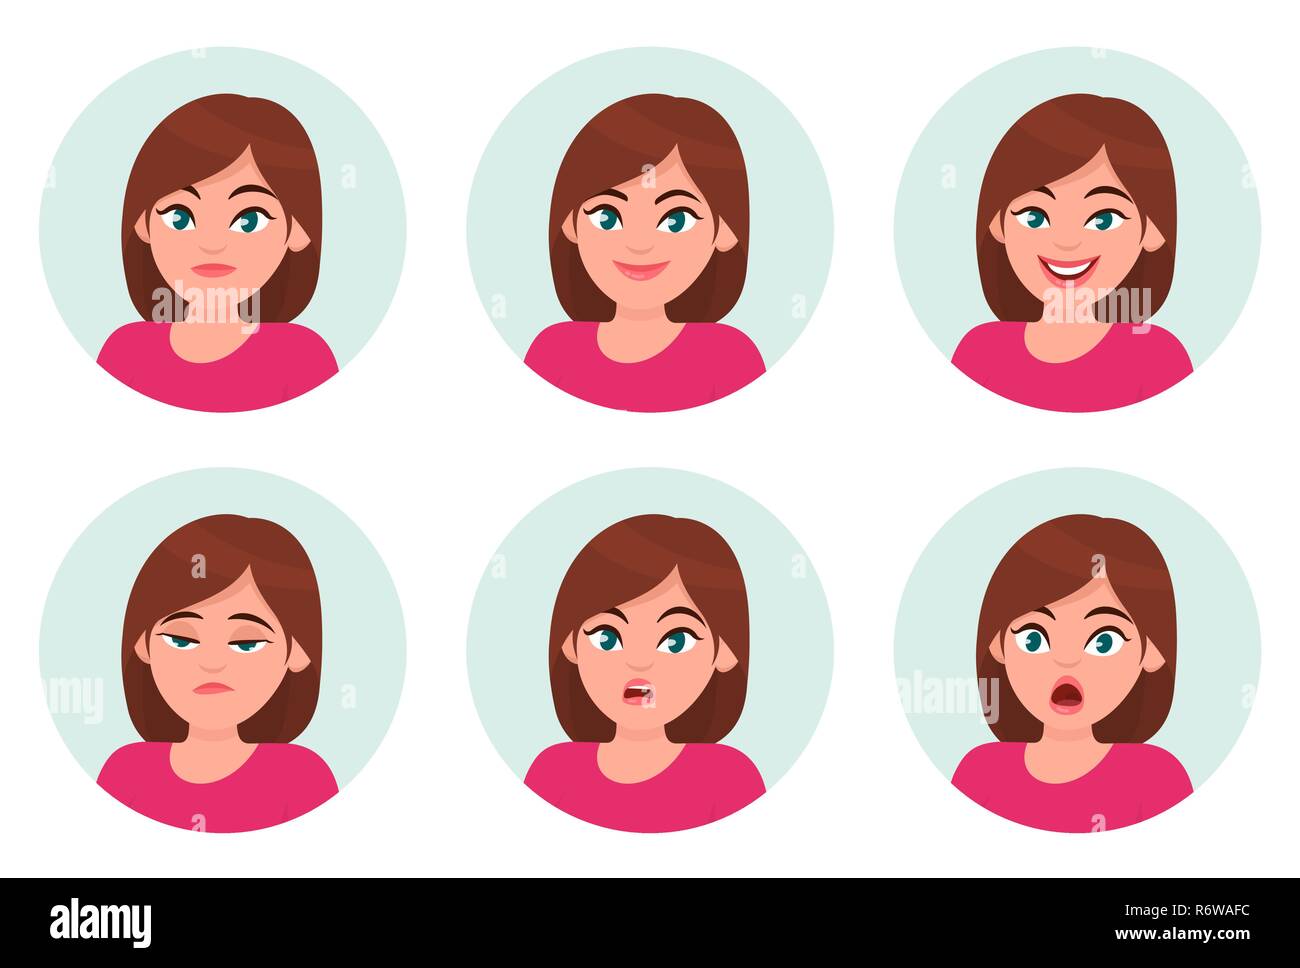 Jeu de fille/femme émotions faciales. Femme différentes émotions. Femme caractère emoji avec différentes expressions. Vector illustration. Illustration de Vecteur